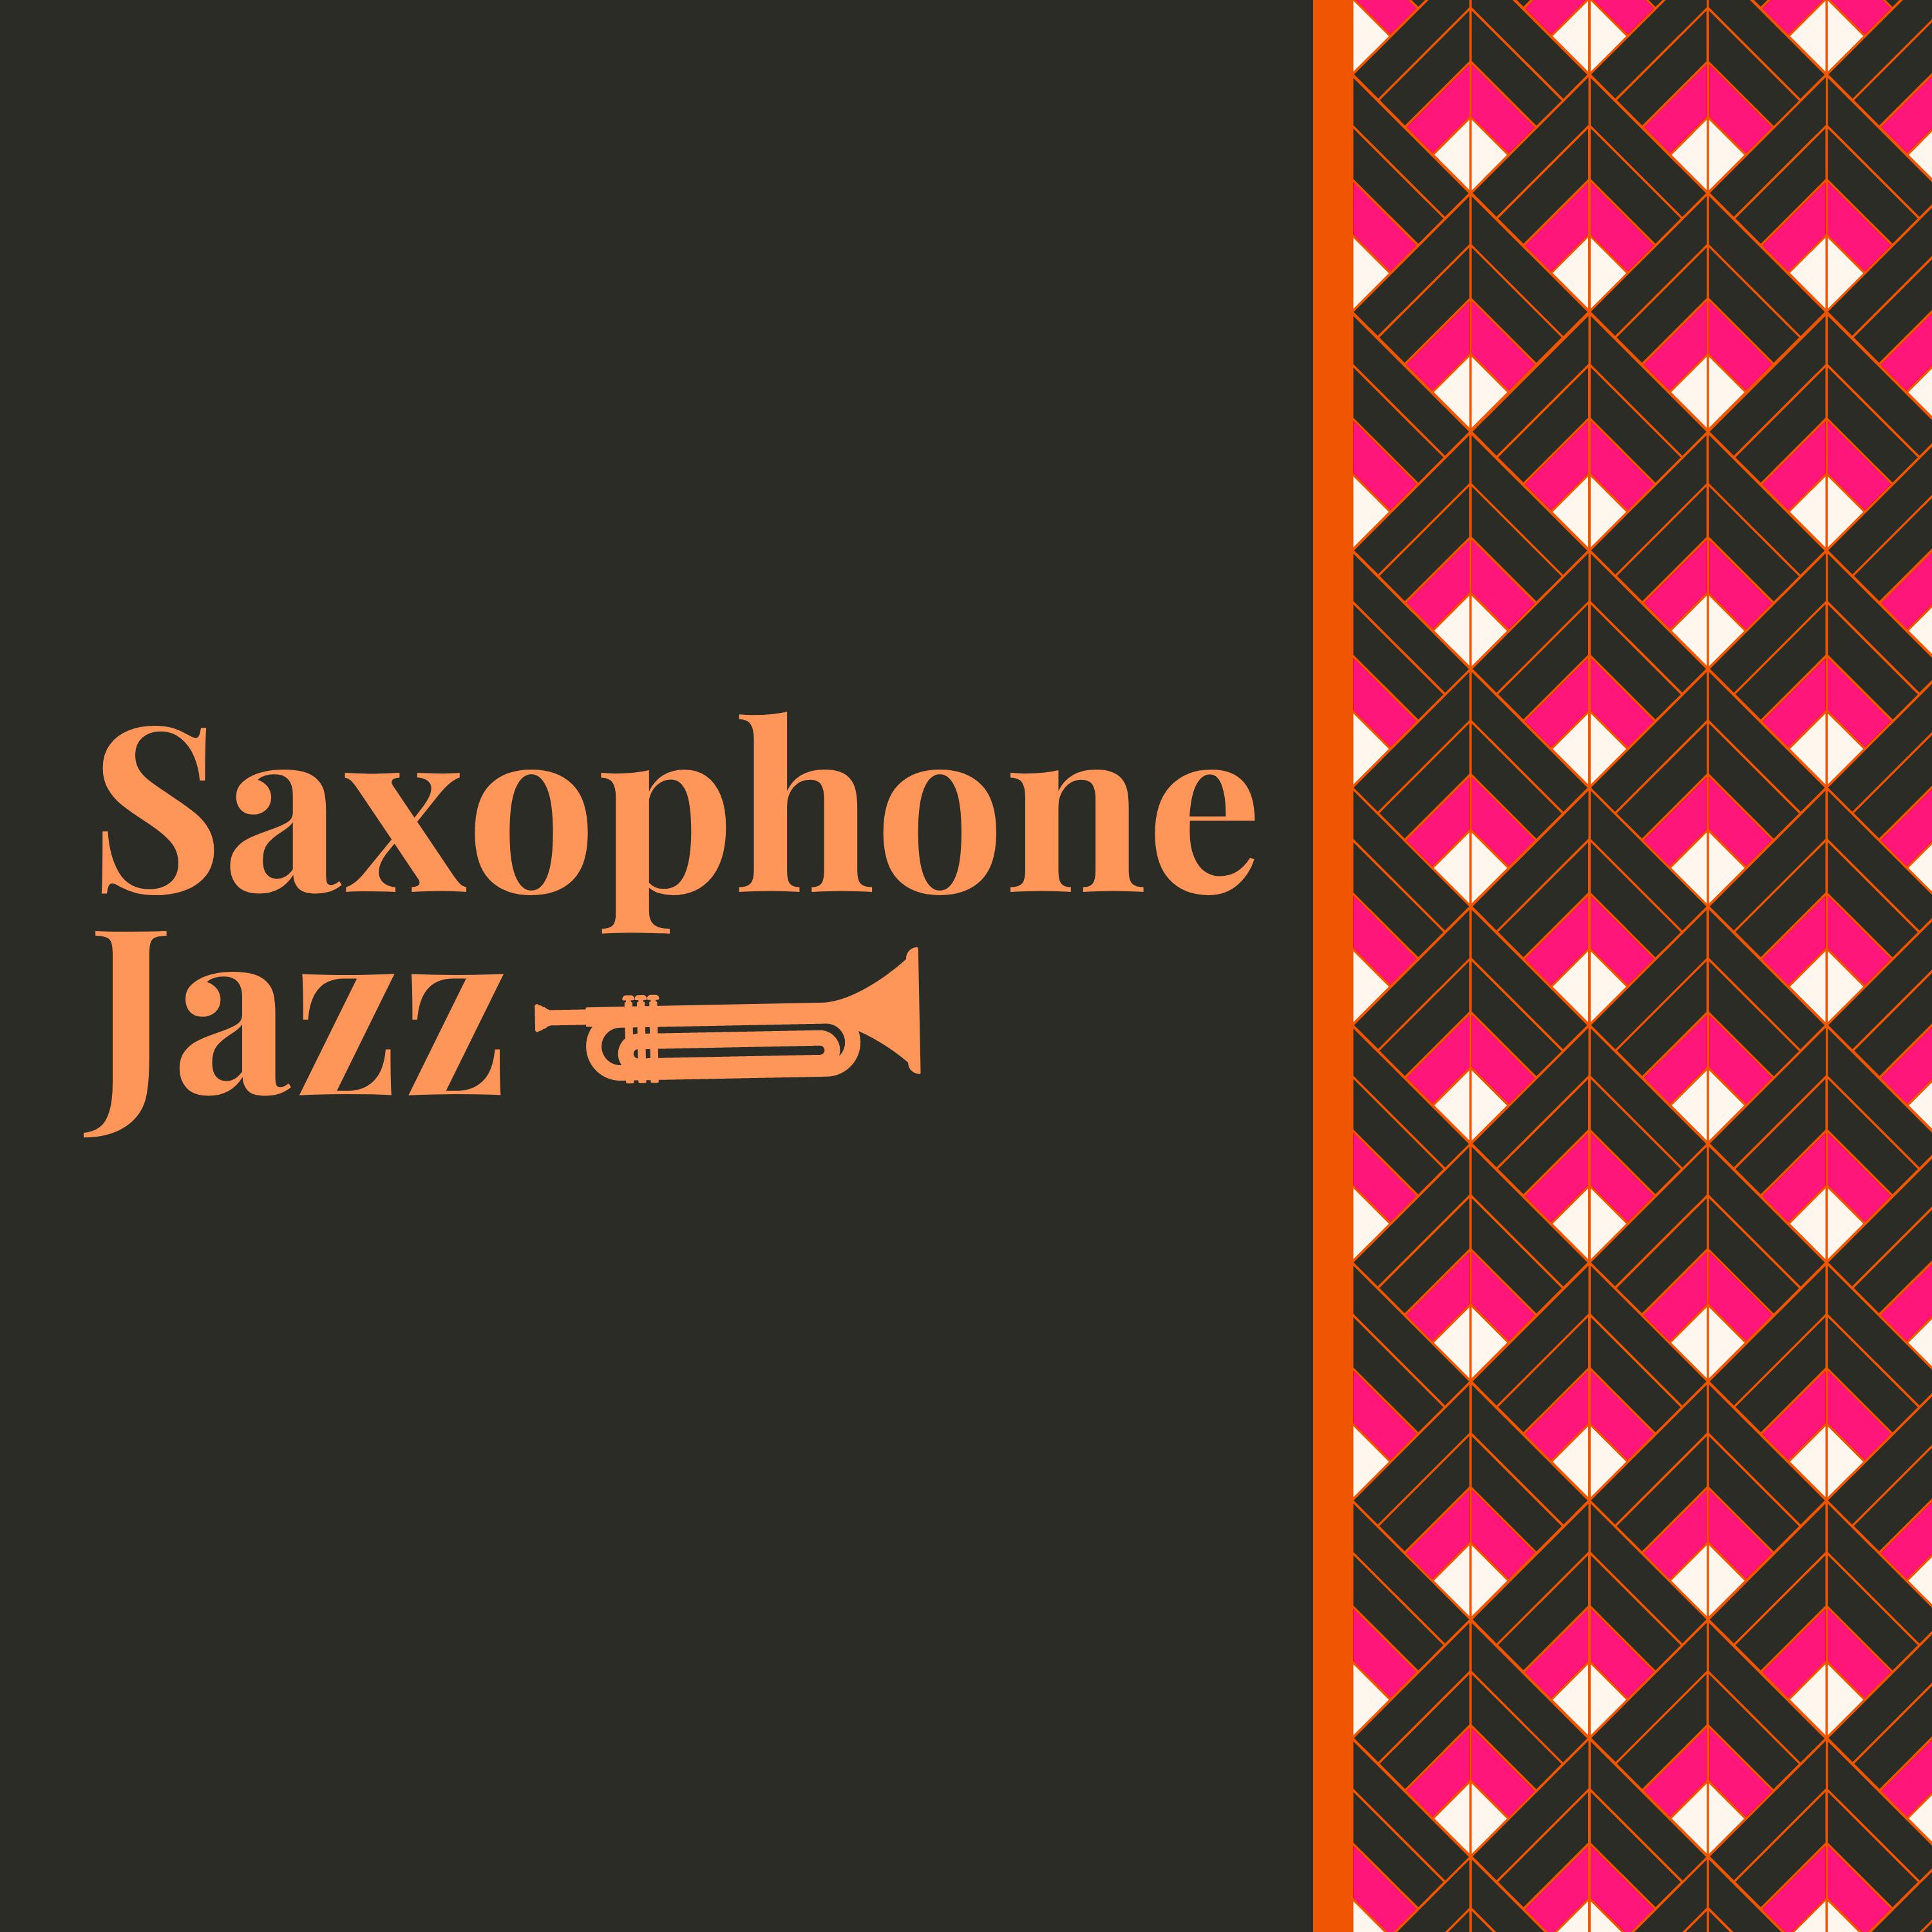 Saxophone Jazz - Jazz Named